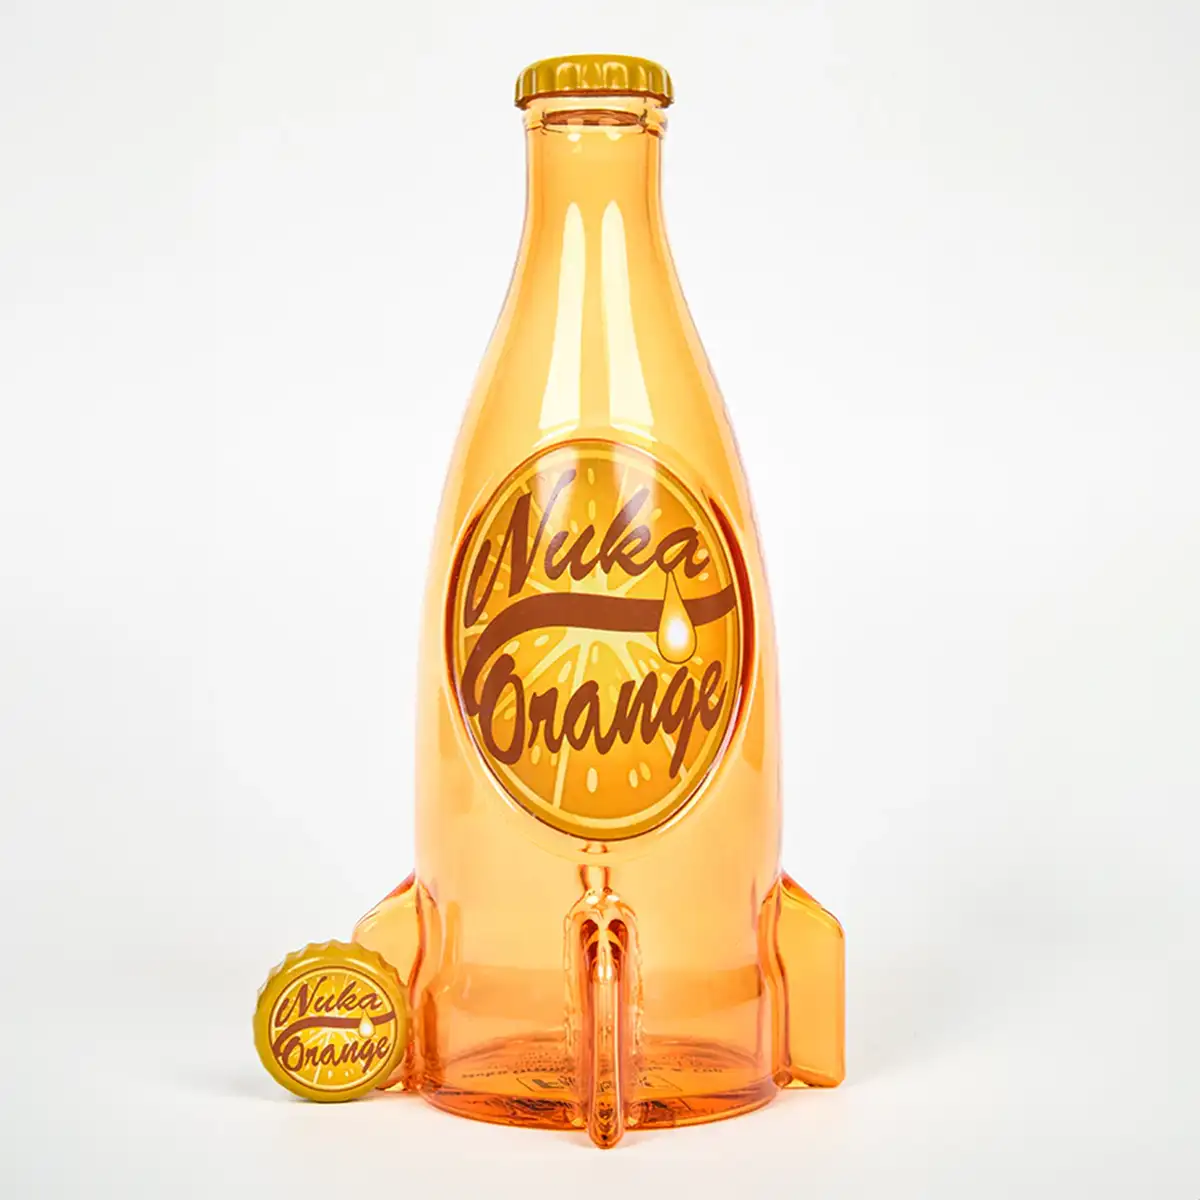 Fallout "Nuka Cola Orange" Glass Bottle and Caps Image 2